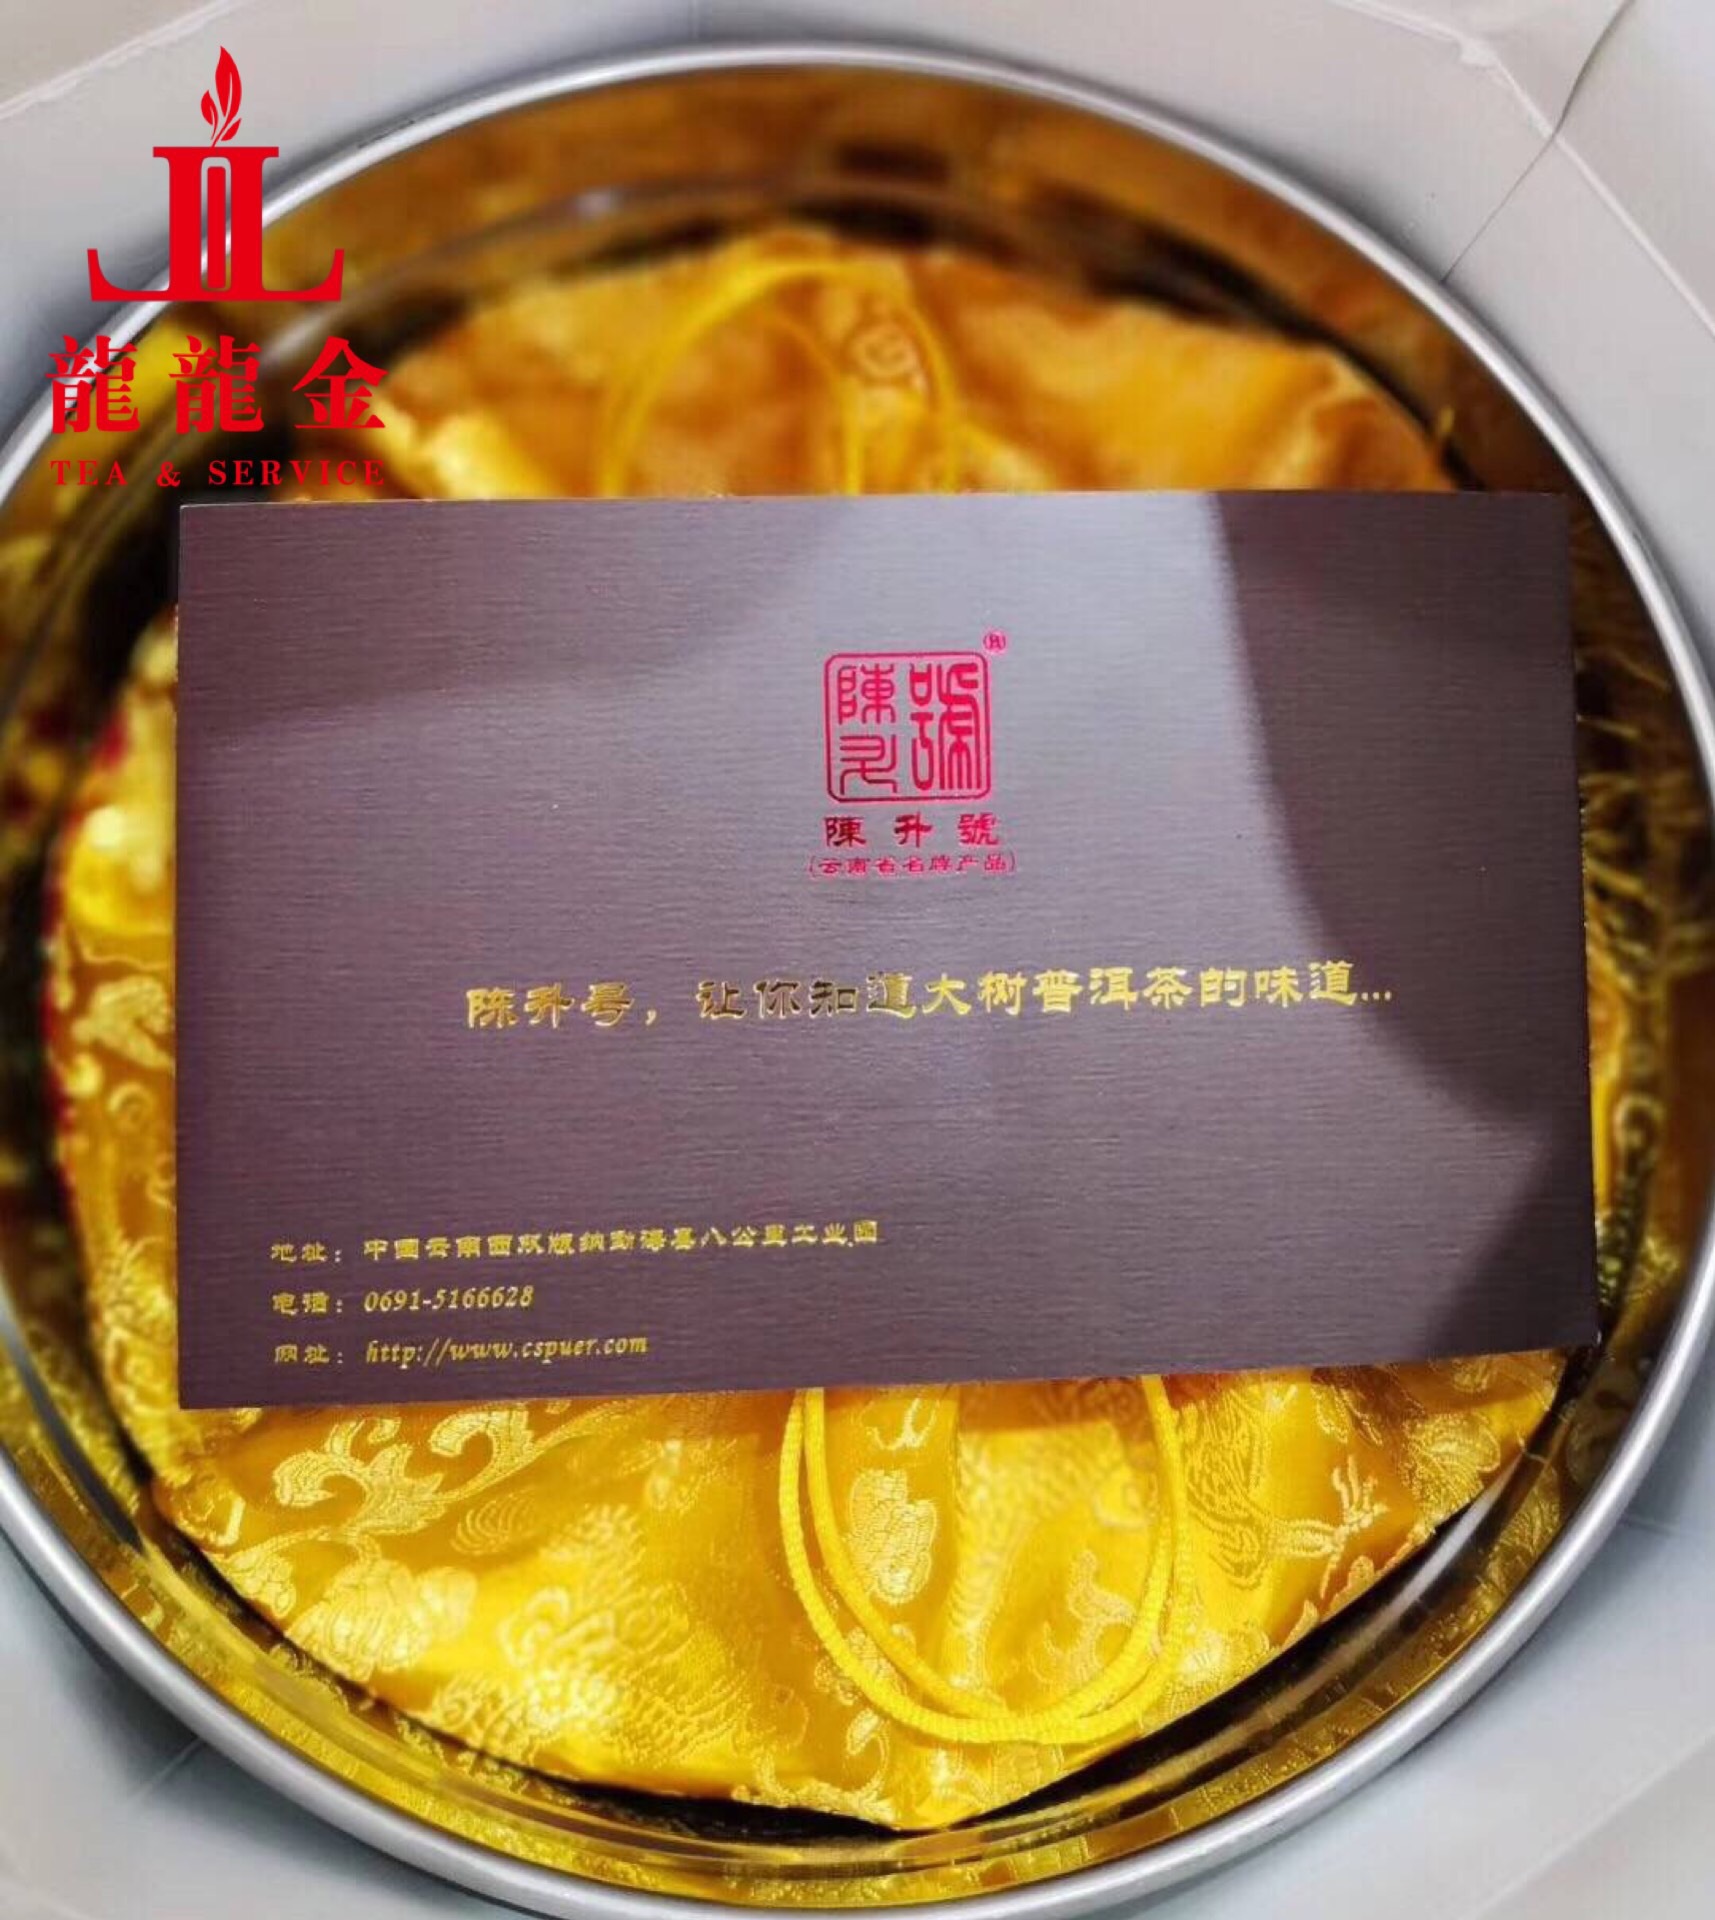 陳升號 七星橡筋餅 2017年老班章 普洱生茶 2500g